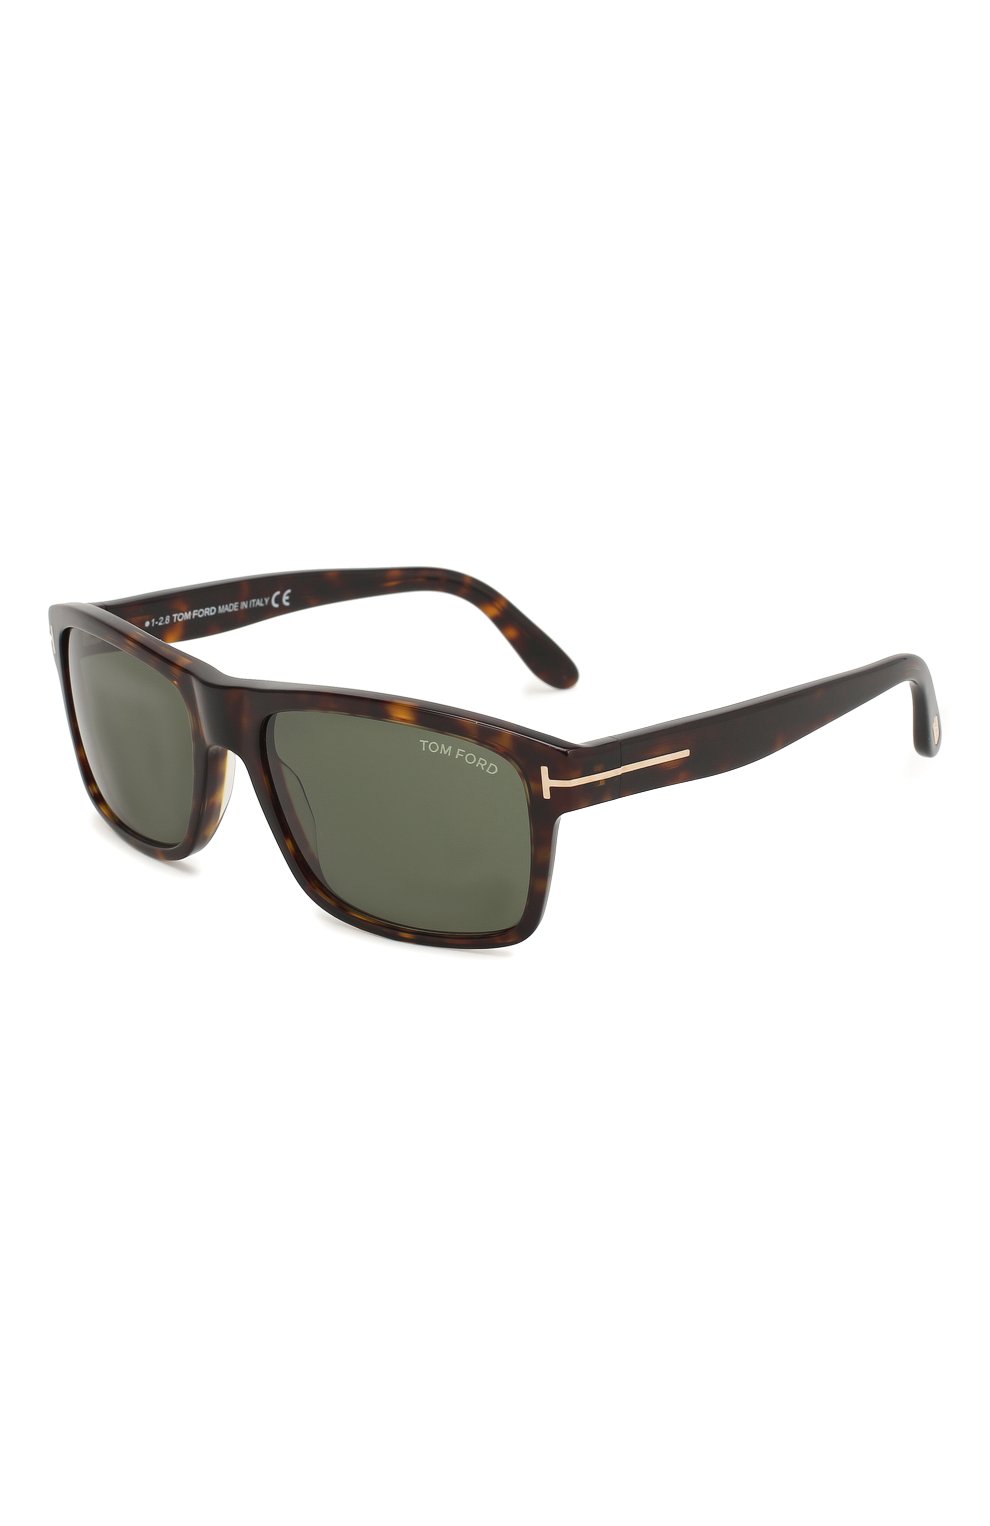 Мужские солнцезащитные очки TOM FORD коричневого цвета, арт. TF678 52N | Фото 1 (Тип очков: С/з; Статус проверки: Требуются правки, Проверена категория; Очки форма: Прямоугольные; Оптика Гендер: оптика-мужское)